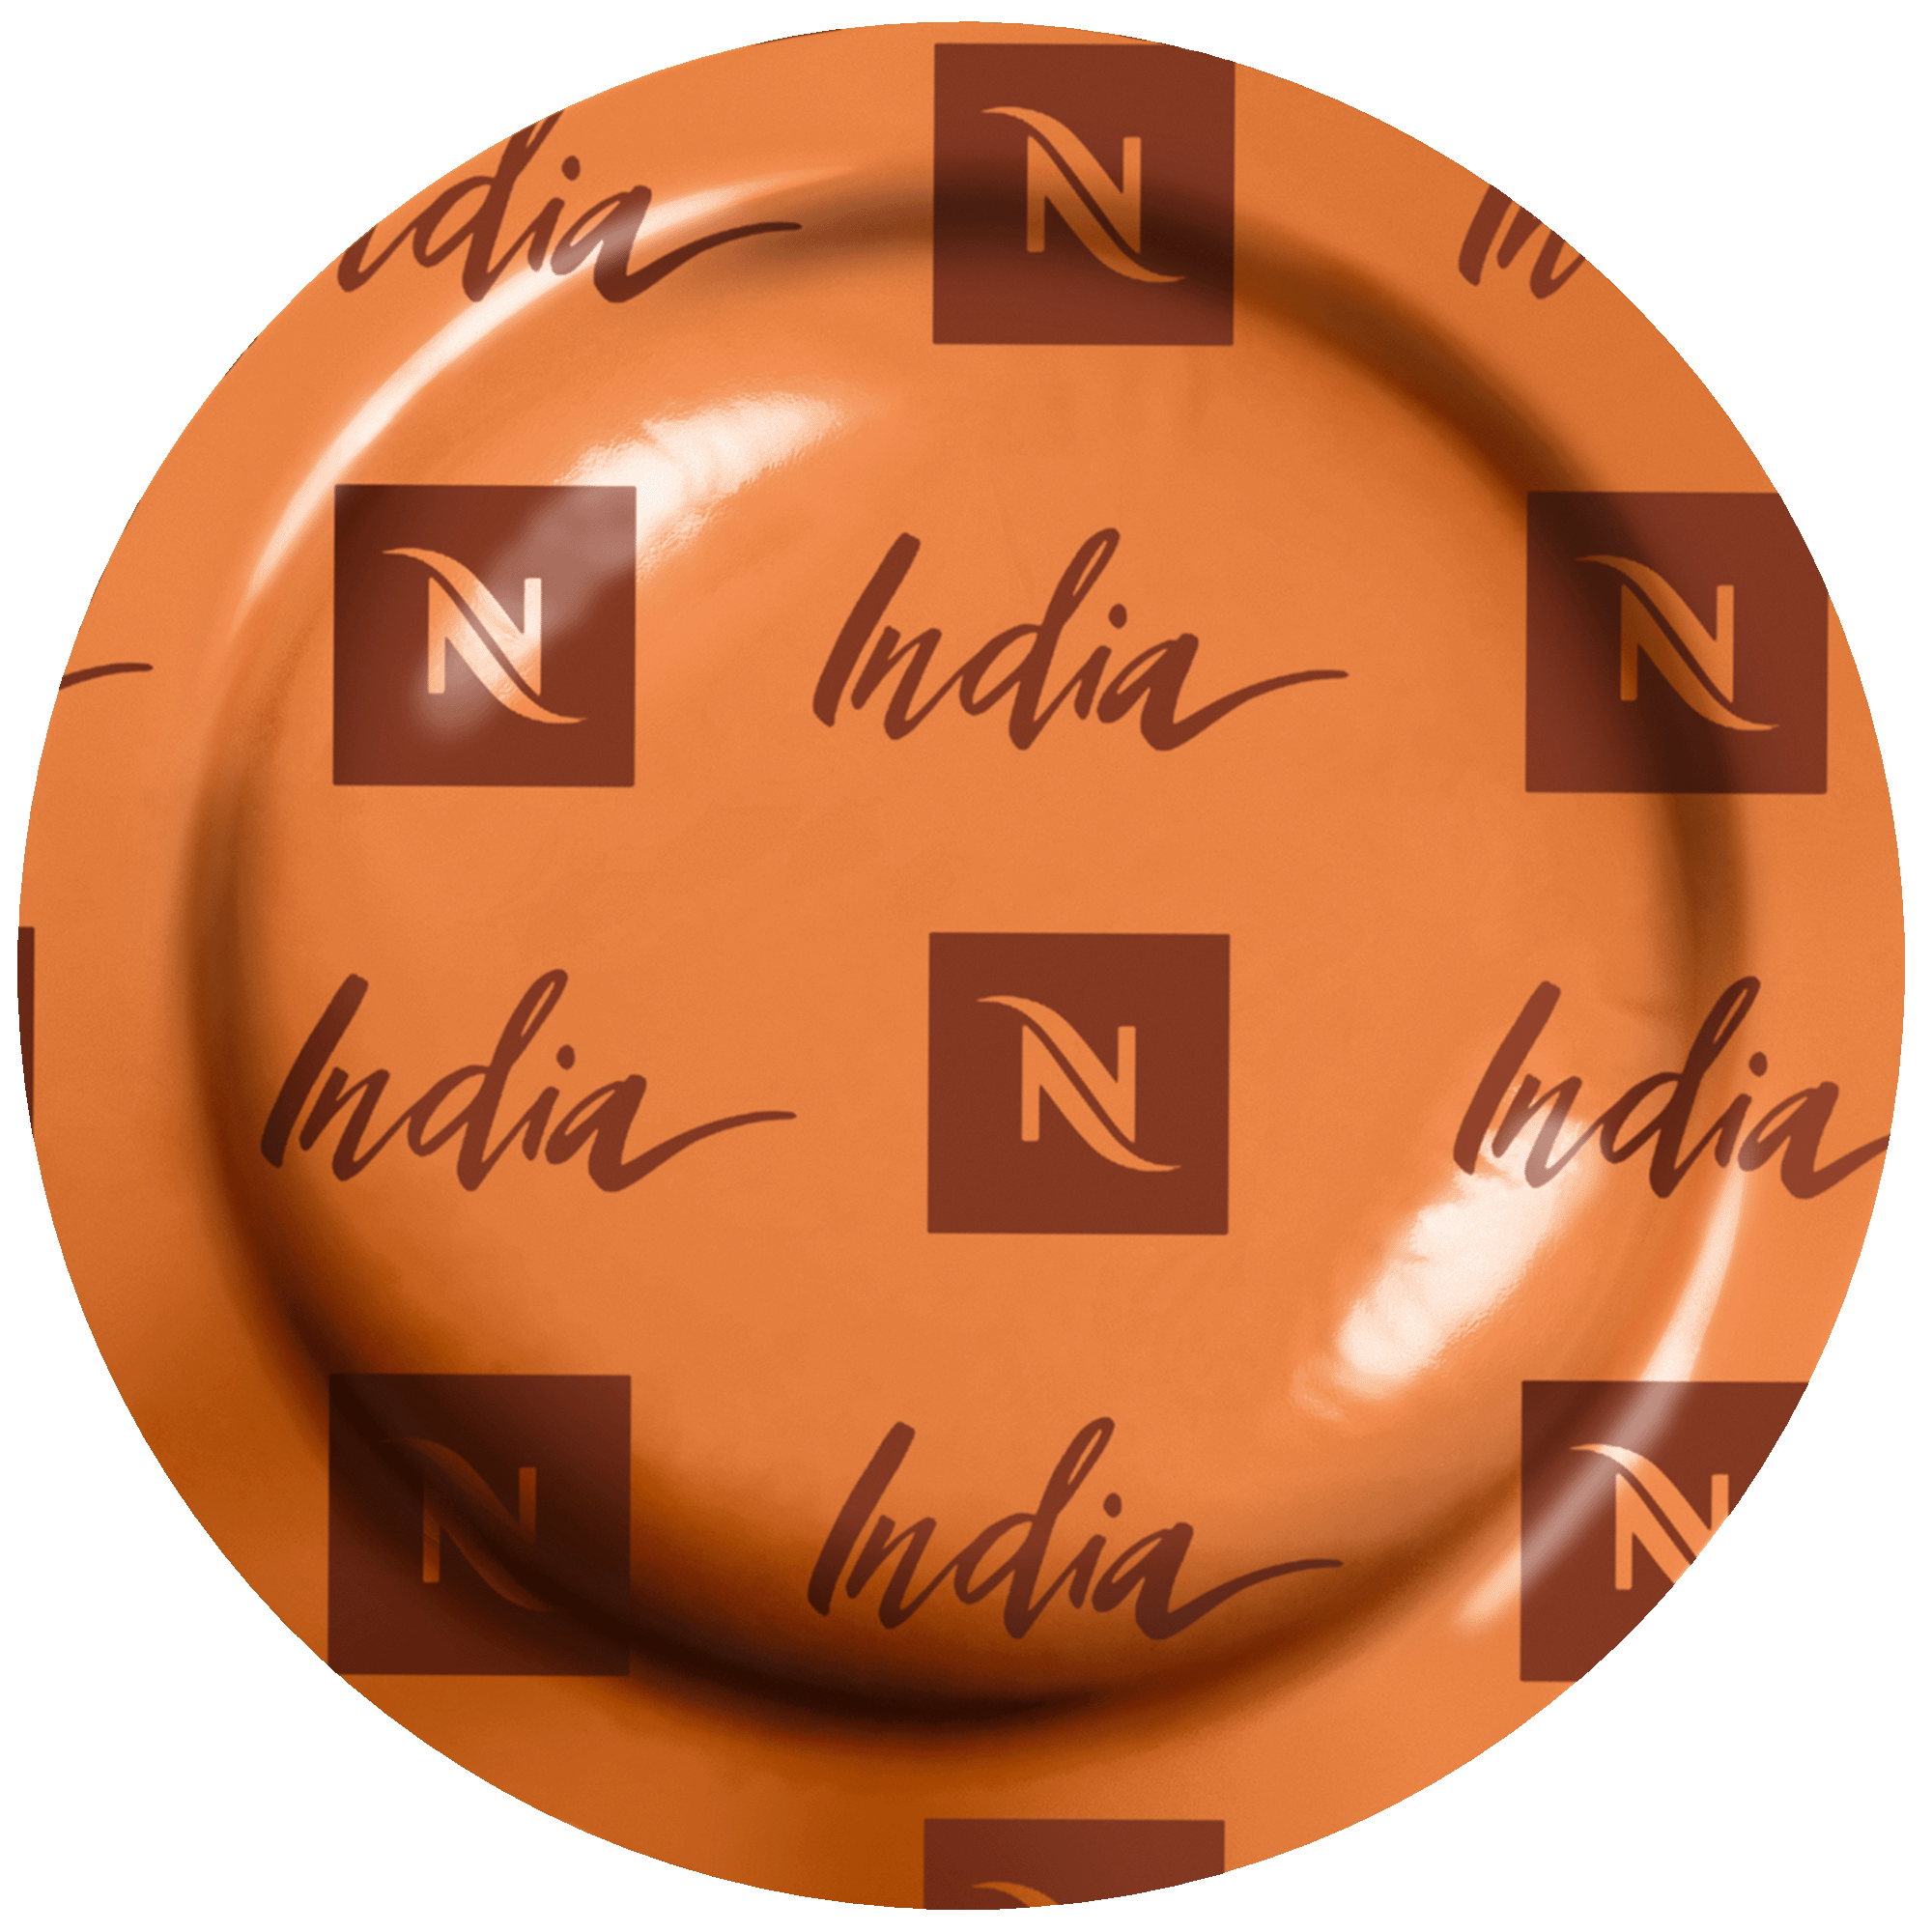 Nespresso Professional Origin India - 50 Pods